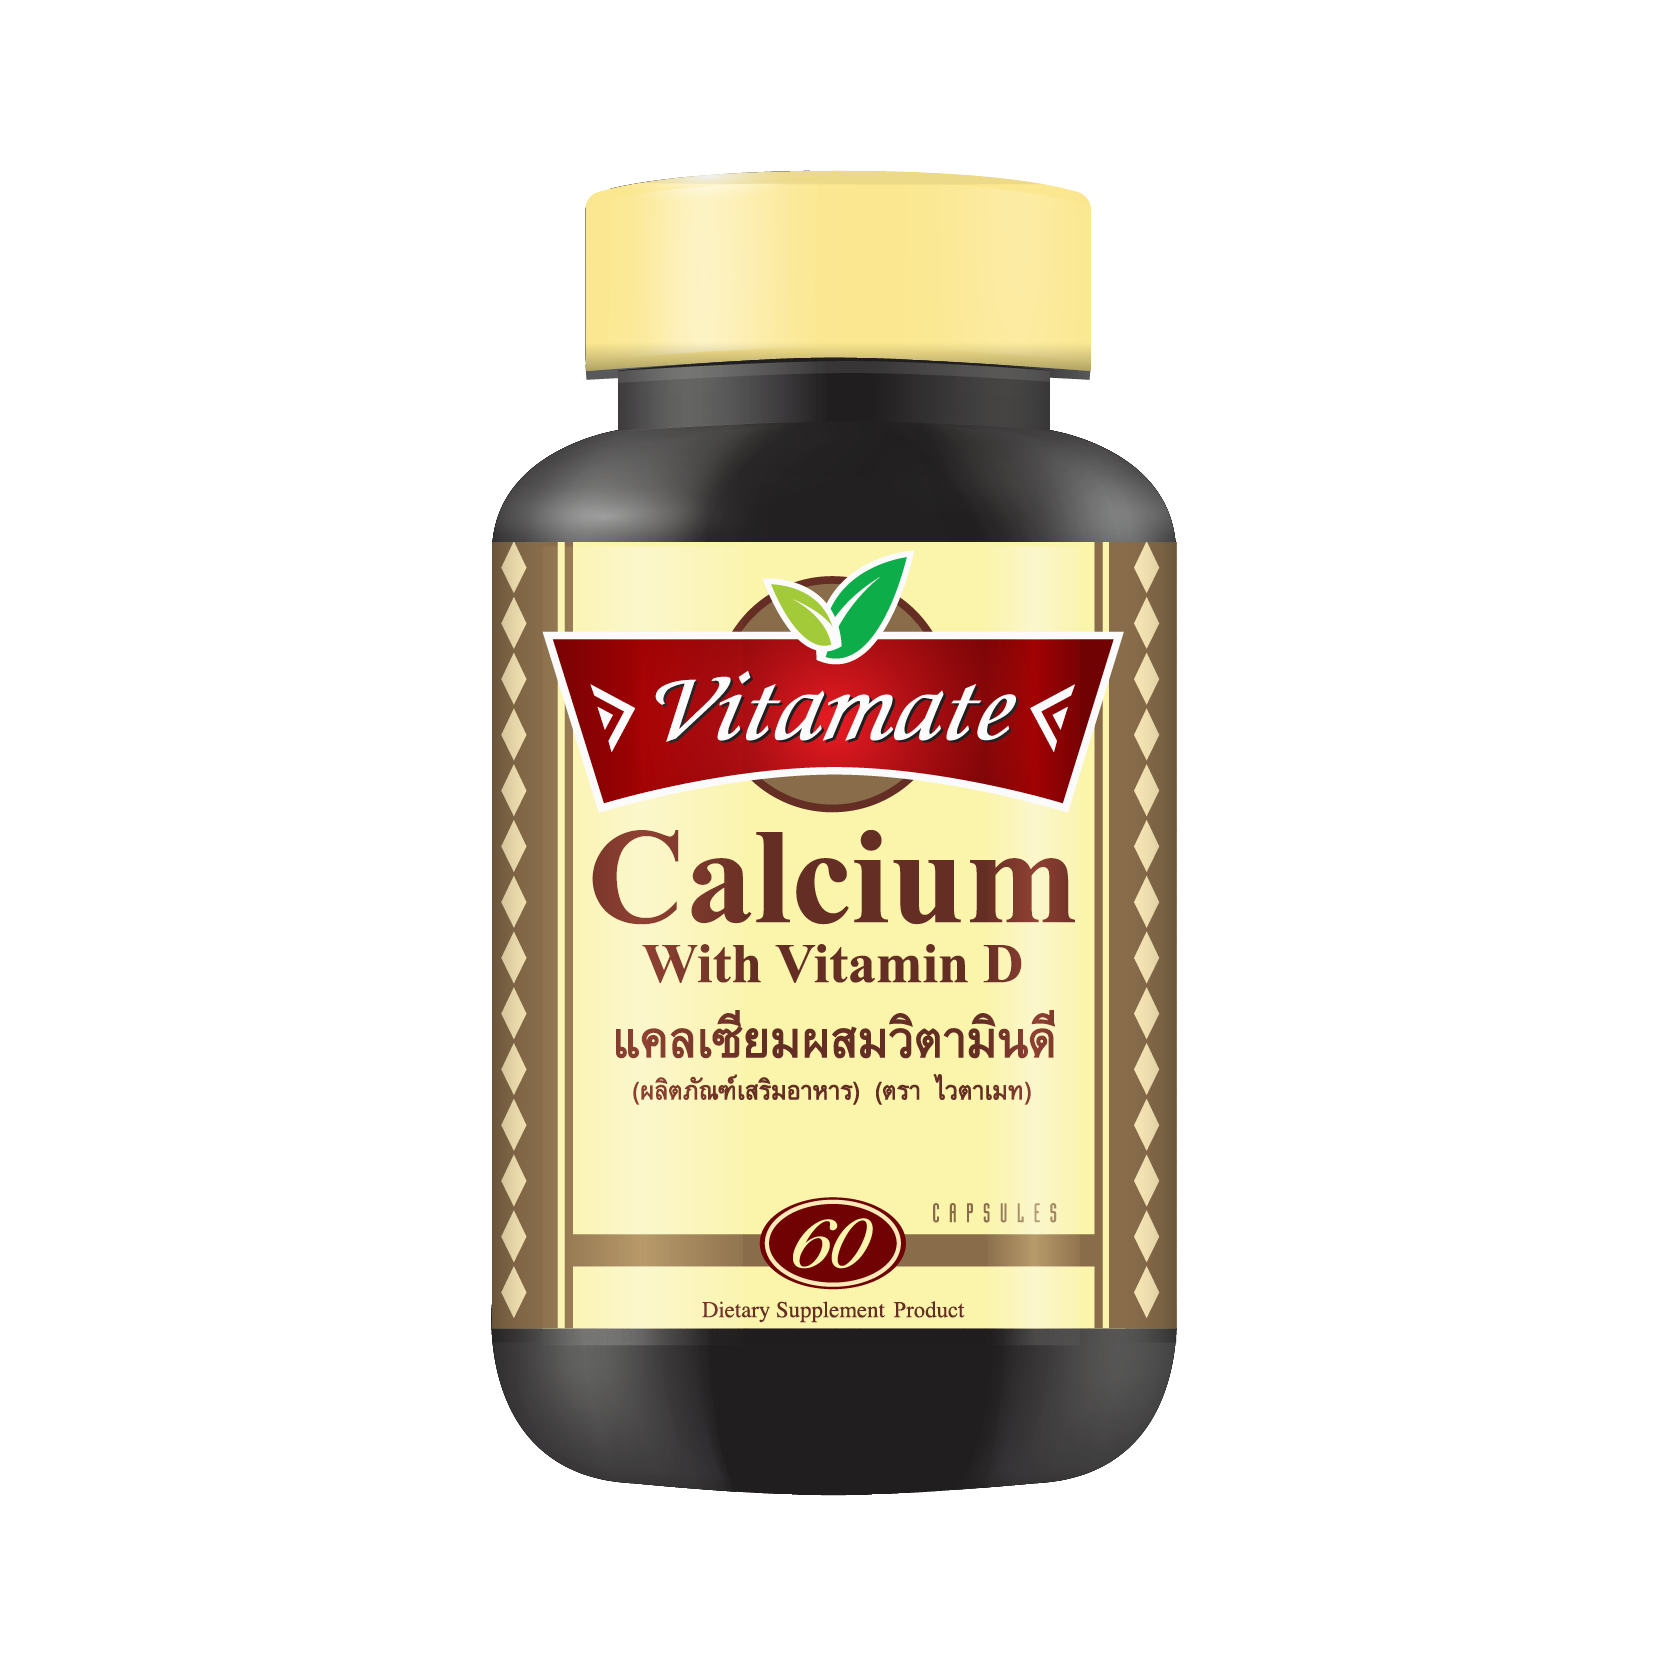 Vitamate Calcium With Vitamin D